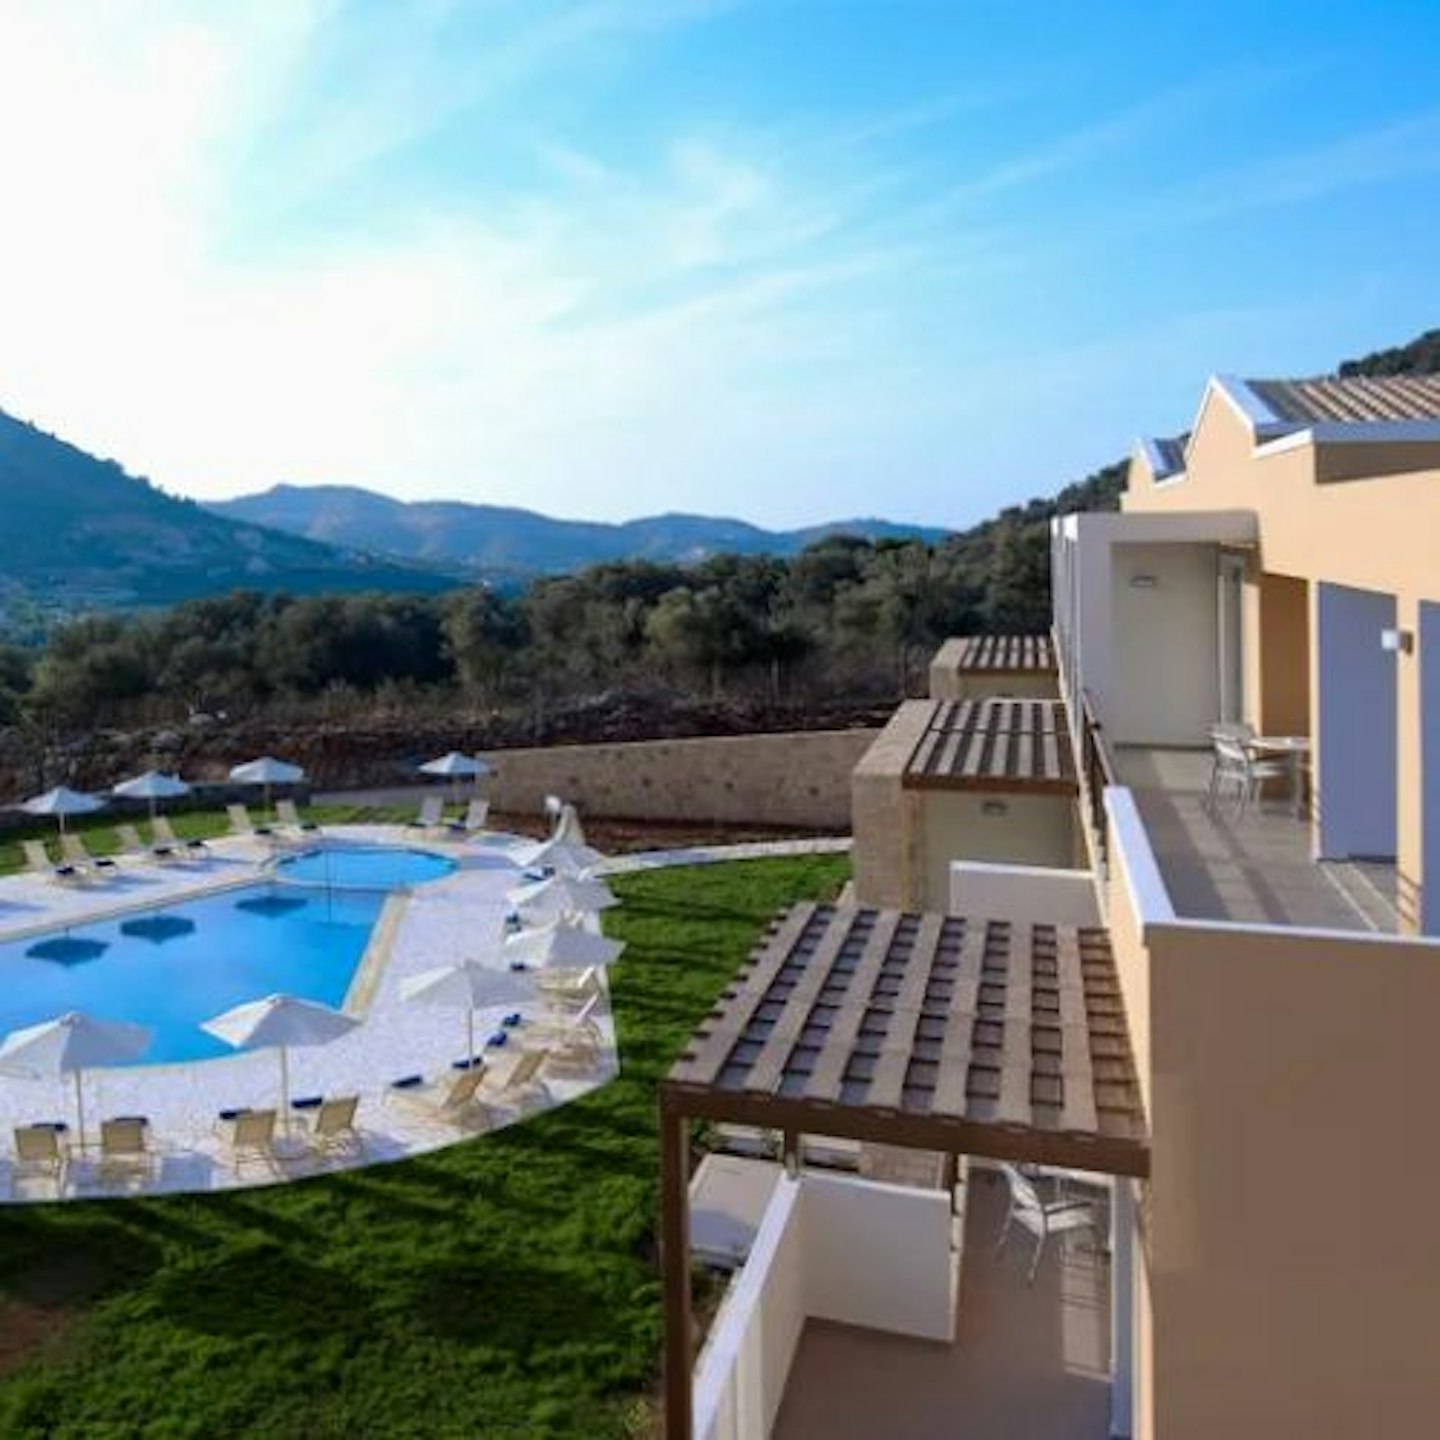 Filion Suites Resort and Spa, Crete